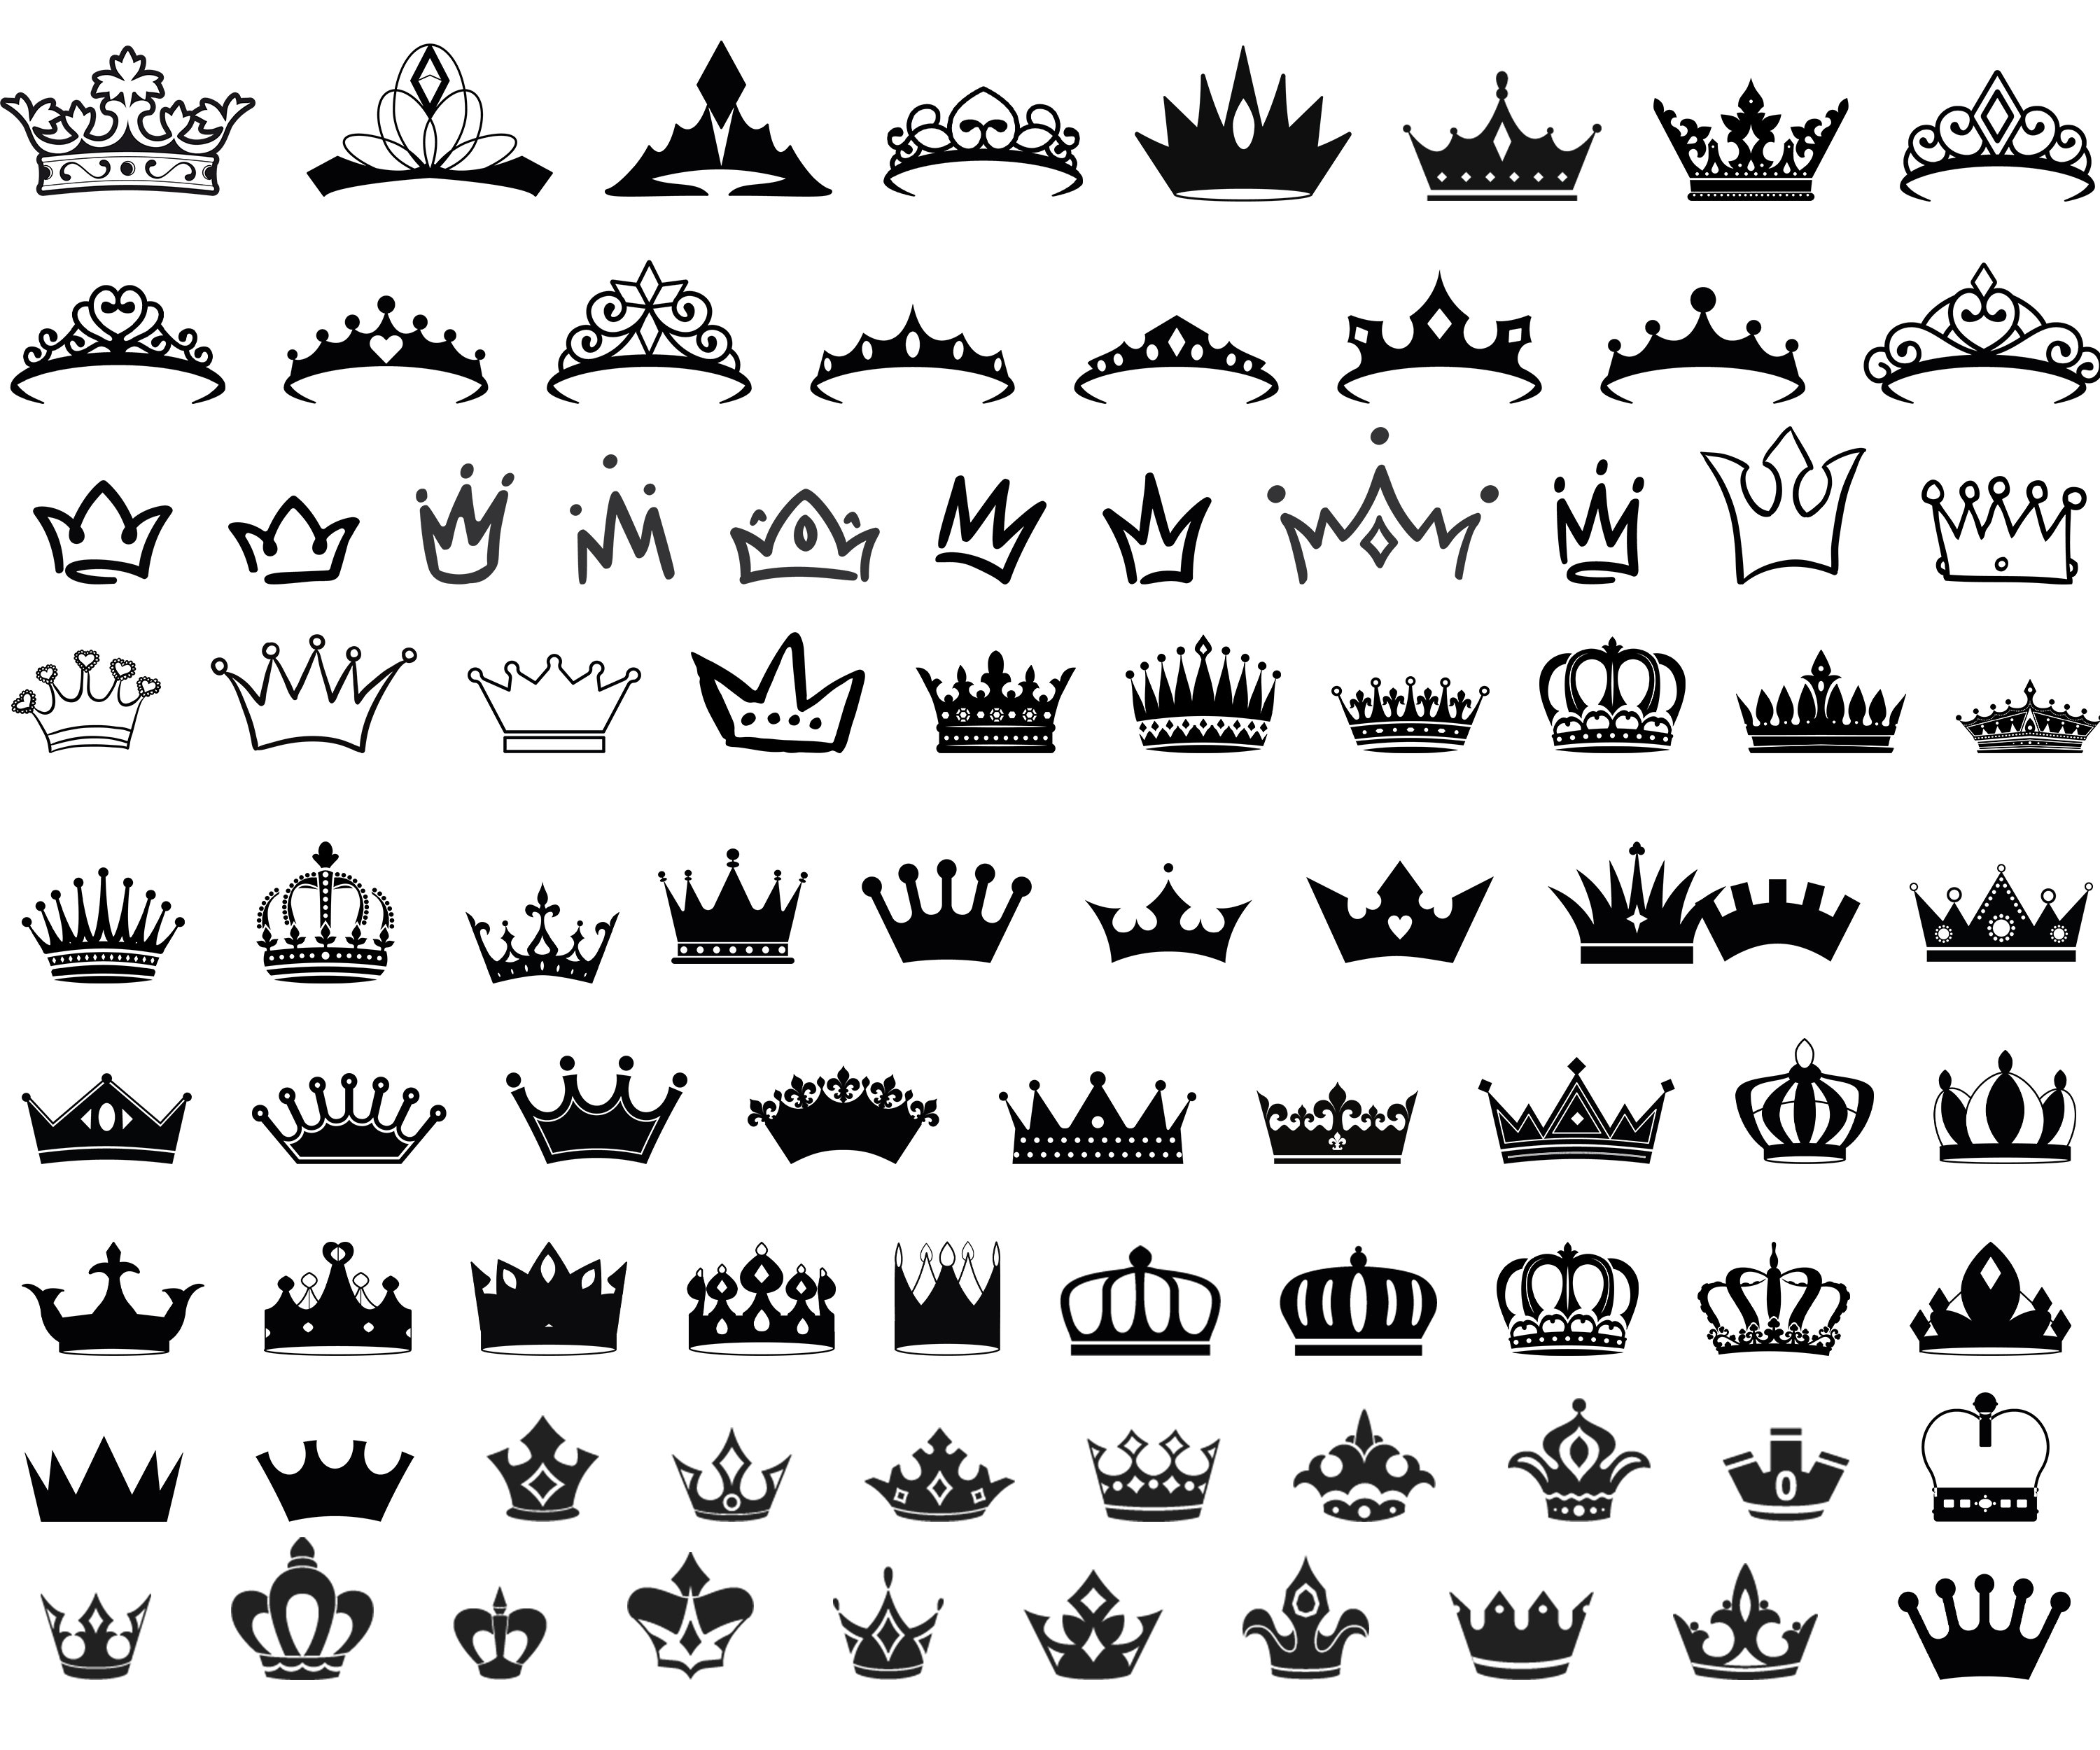 Crown Images  Free Download on Freepik